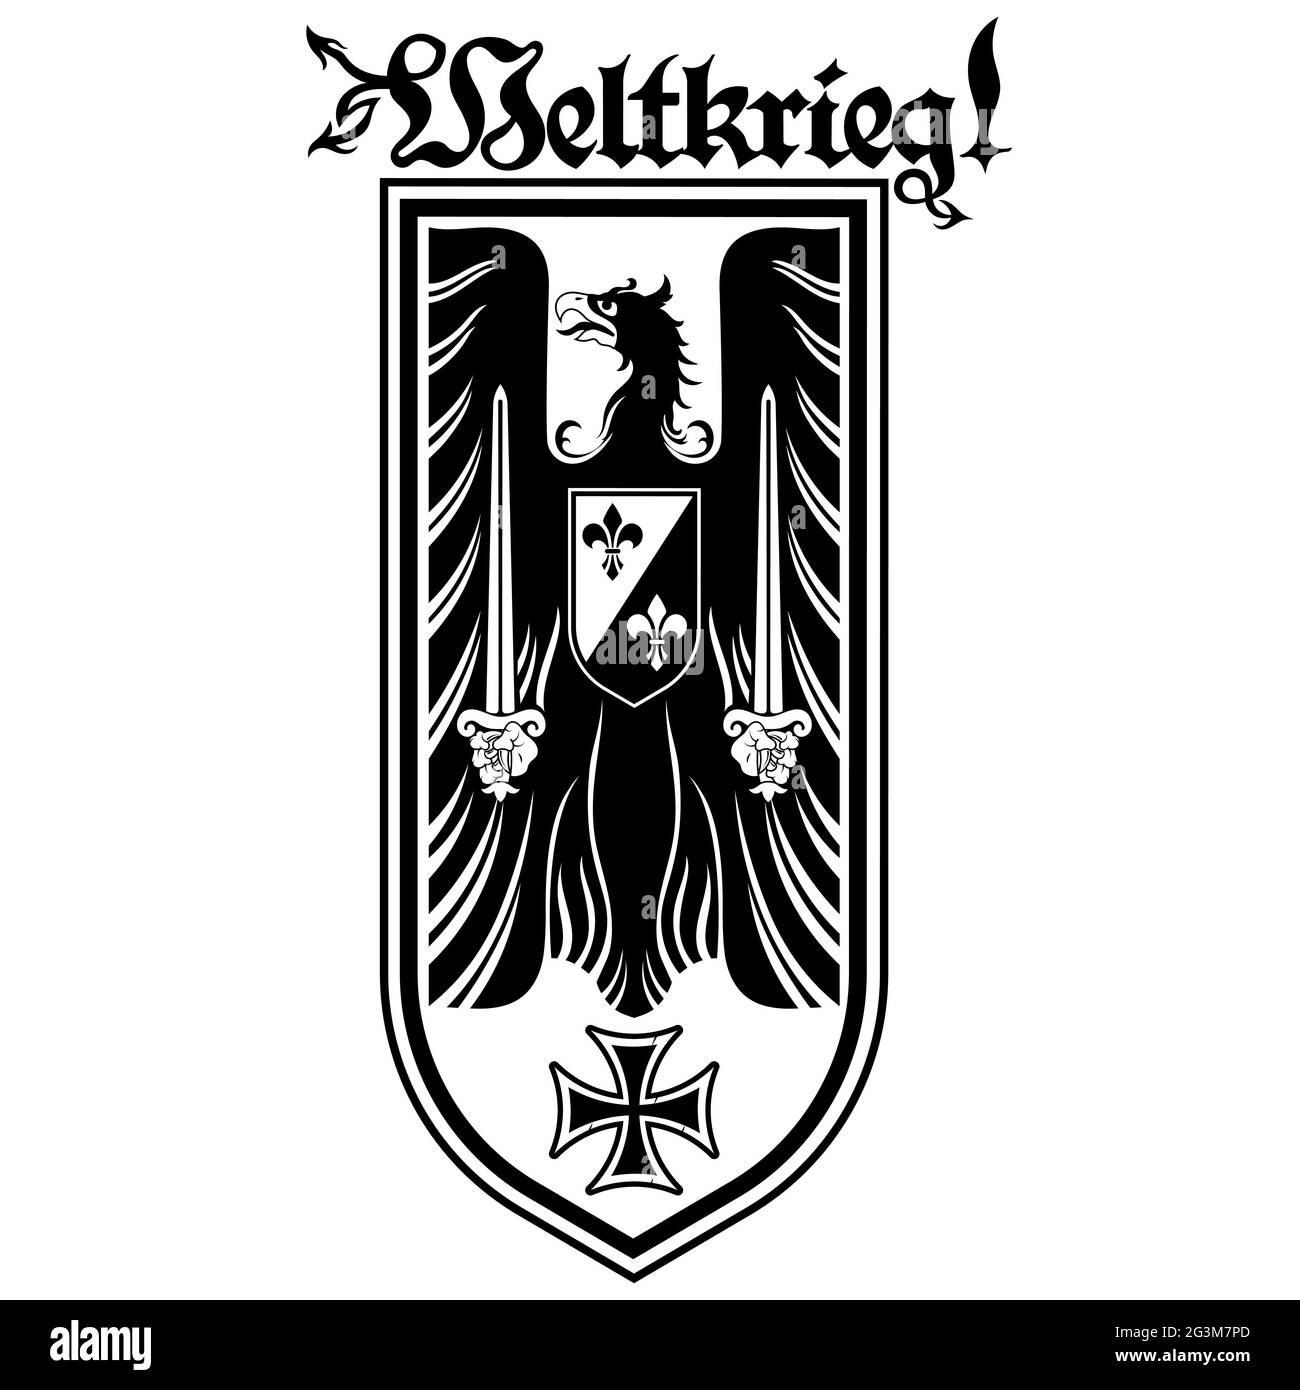 Ritterdesign. Wappentier mit Schwertern, Eisenkreuz und Inschrift - Weltkrieg Stock Vektor